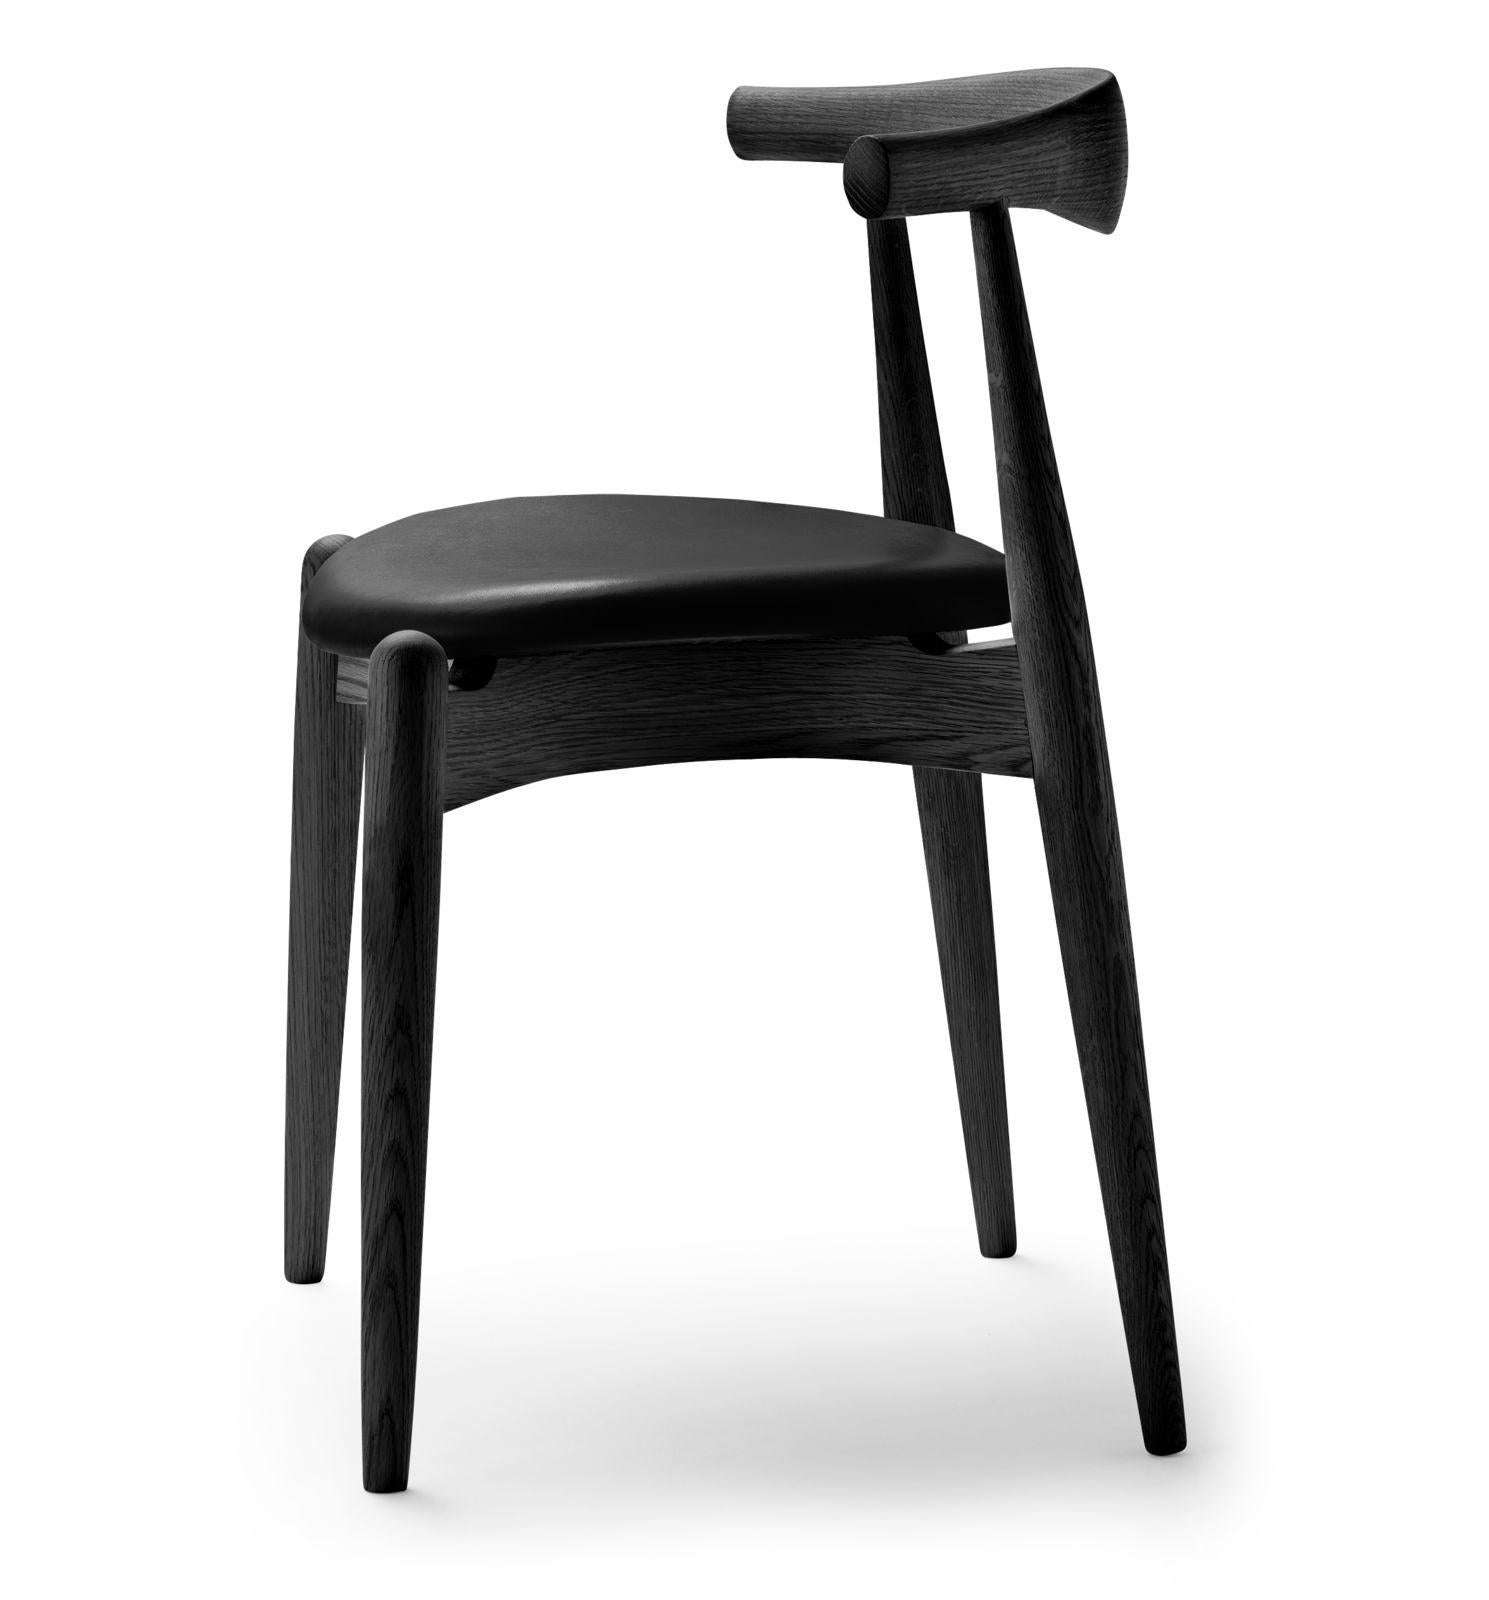 Hans J. Wegner entwarf 1956 den stapelbaren Elbow Chair. Nachdem er zwei Prototypen hergestellt hatte, legte er den produktionsintensiven Stuhlentwurf in seinem Archiv beiseite, wo er fast ein halbes Jahrhundert lang blieb, bis er 2005 wieder zum